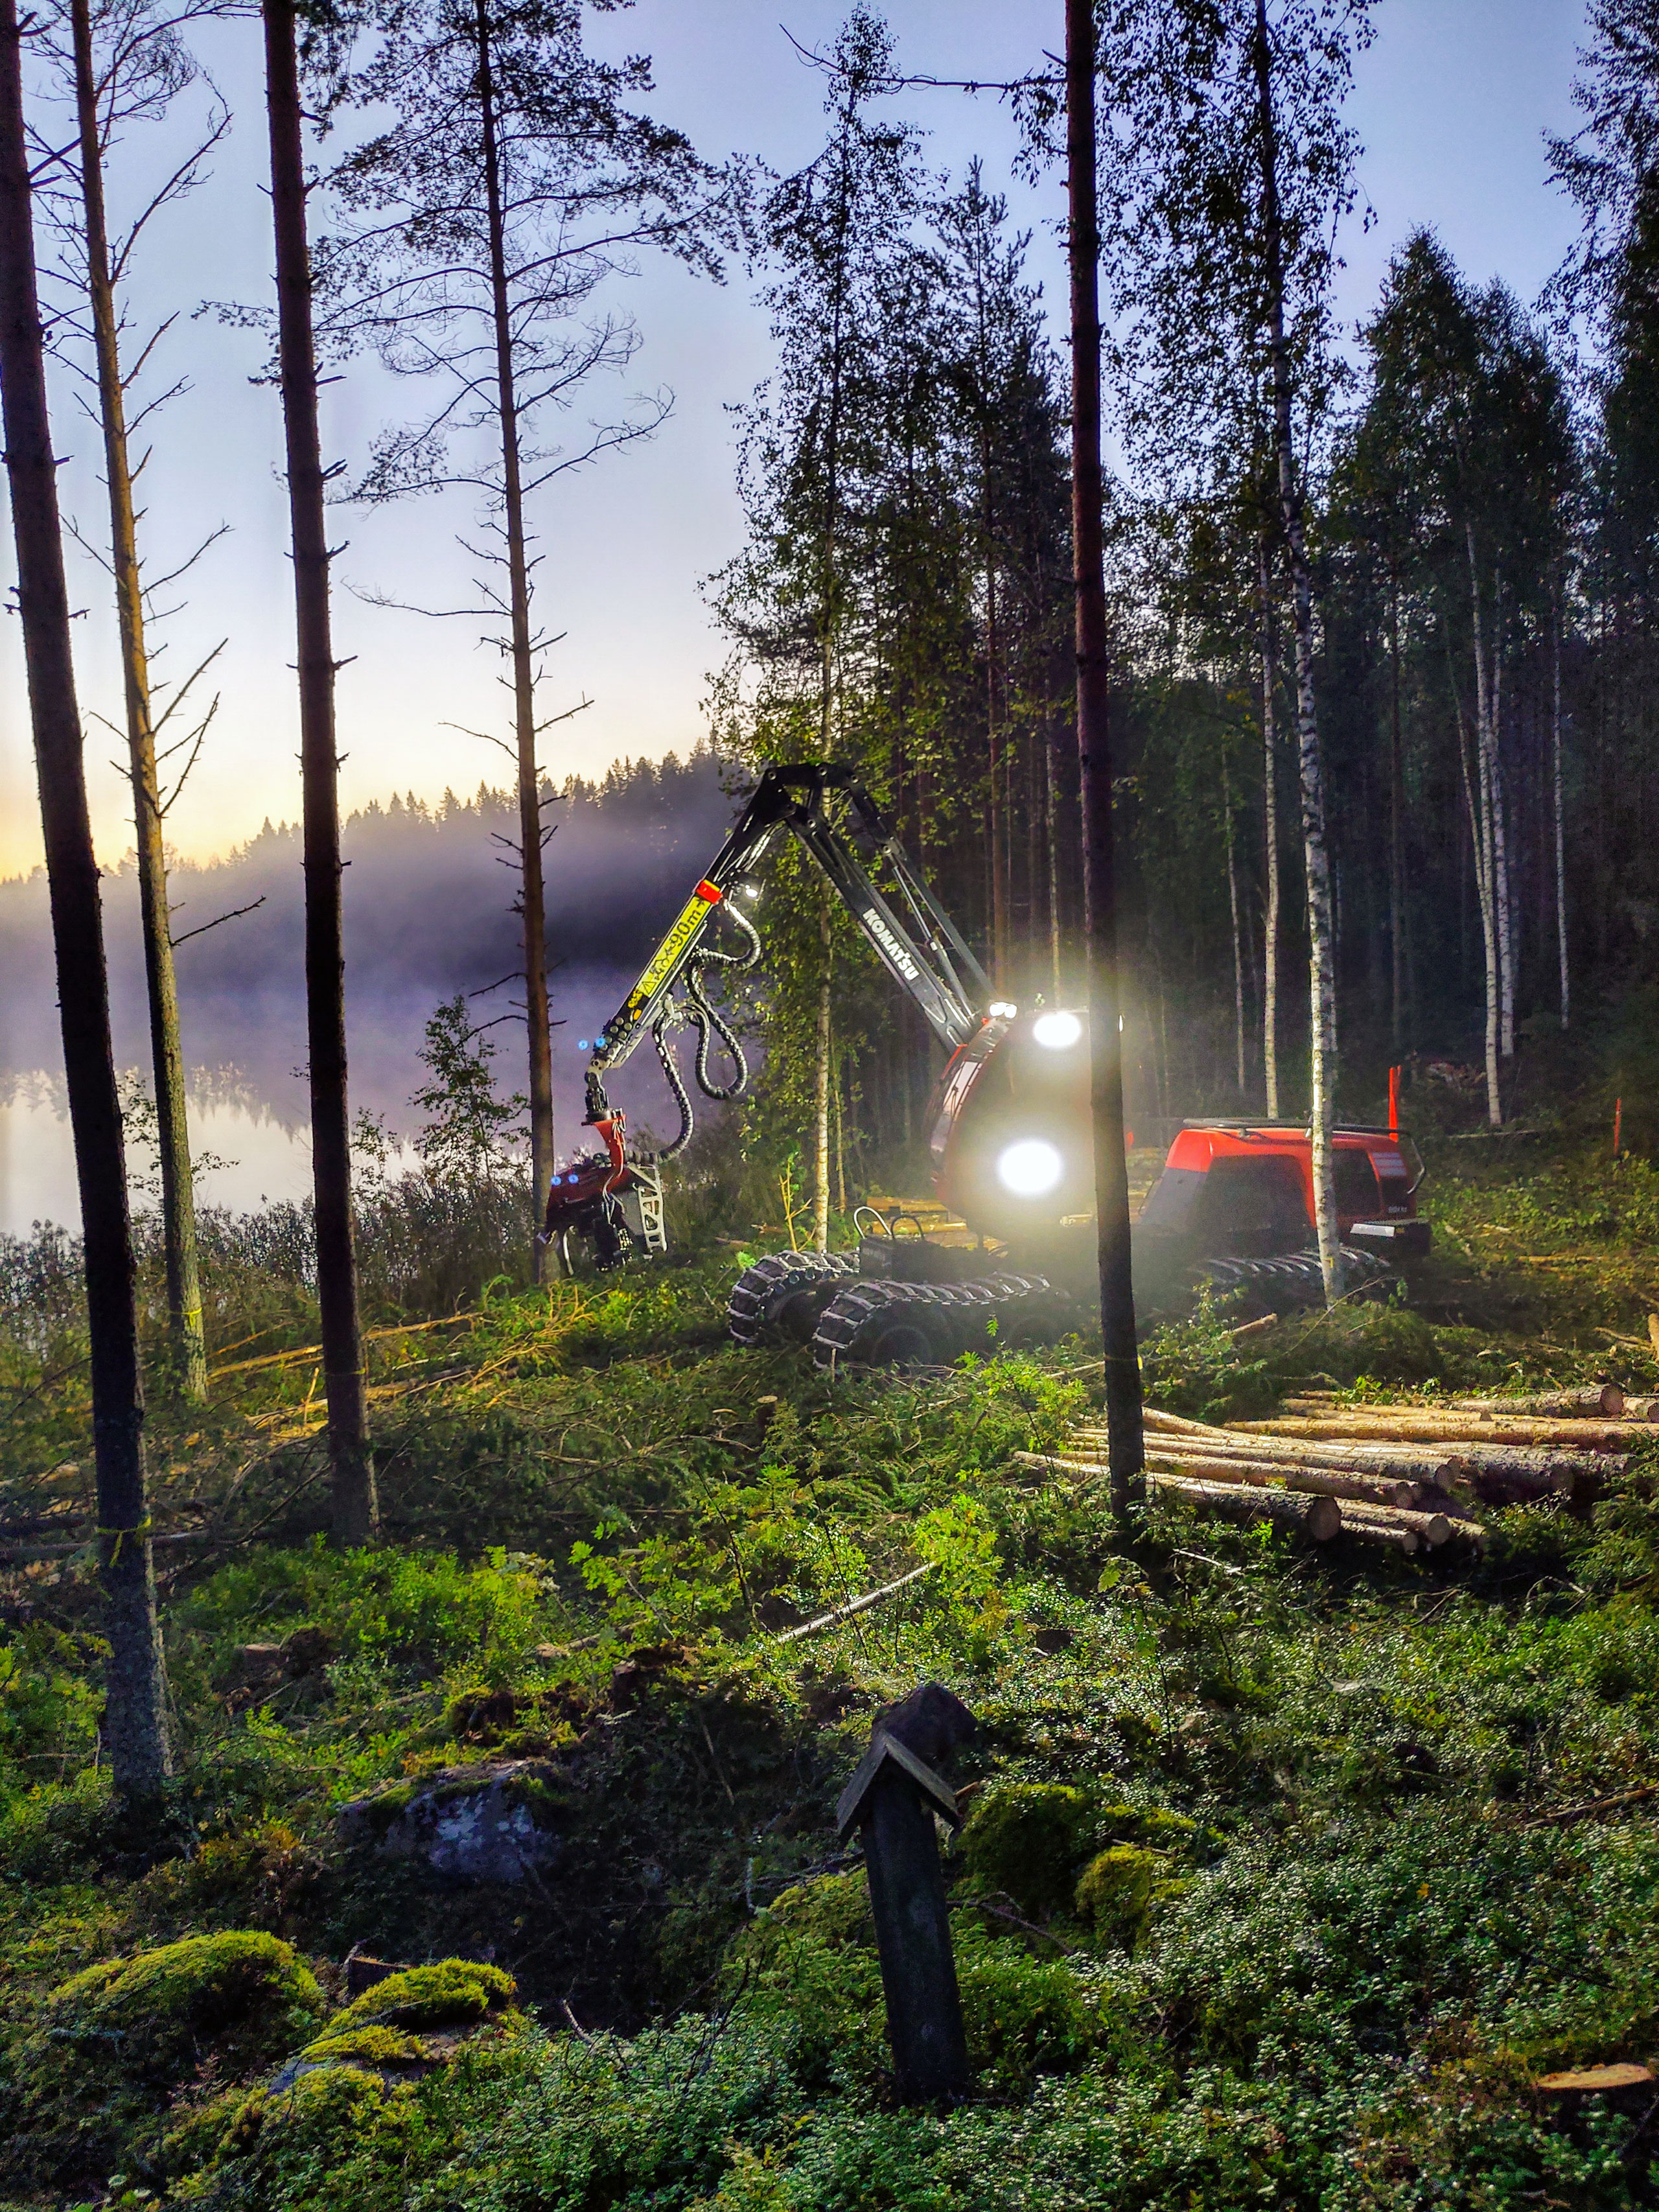 Komatsu Forestin valokuvauskilpailu syyskuu 2020, 2. palkinto: Jani Lappalainen